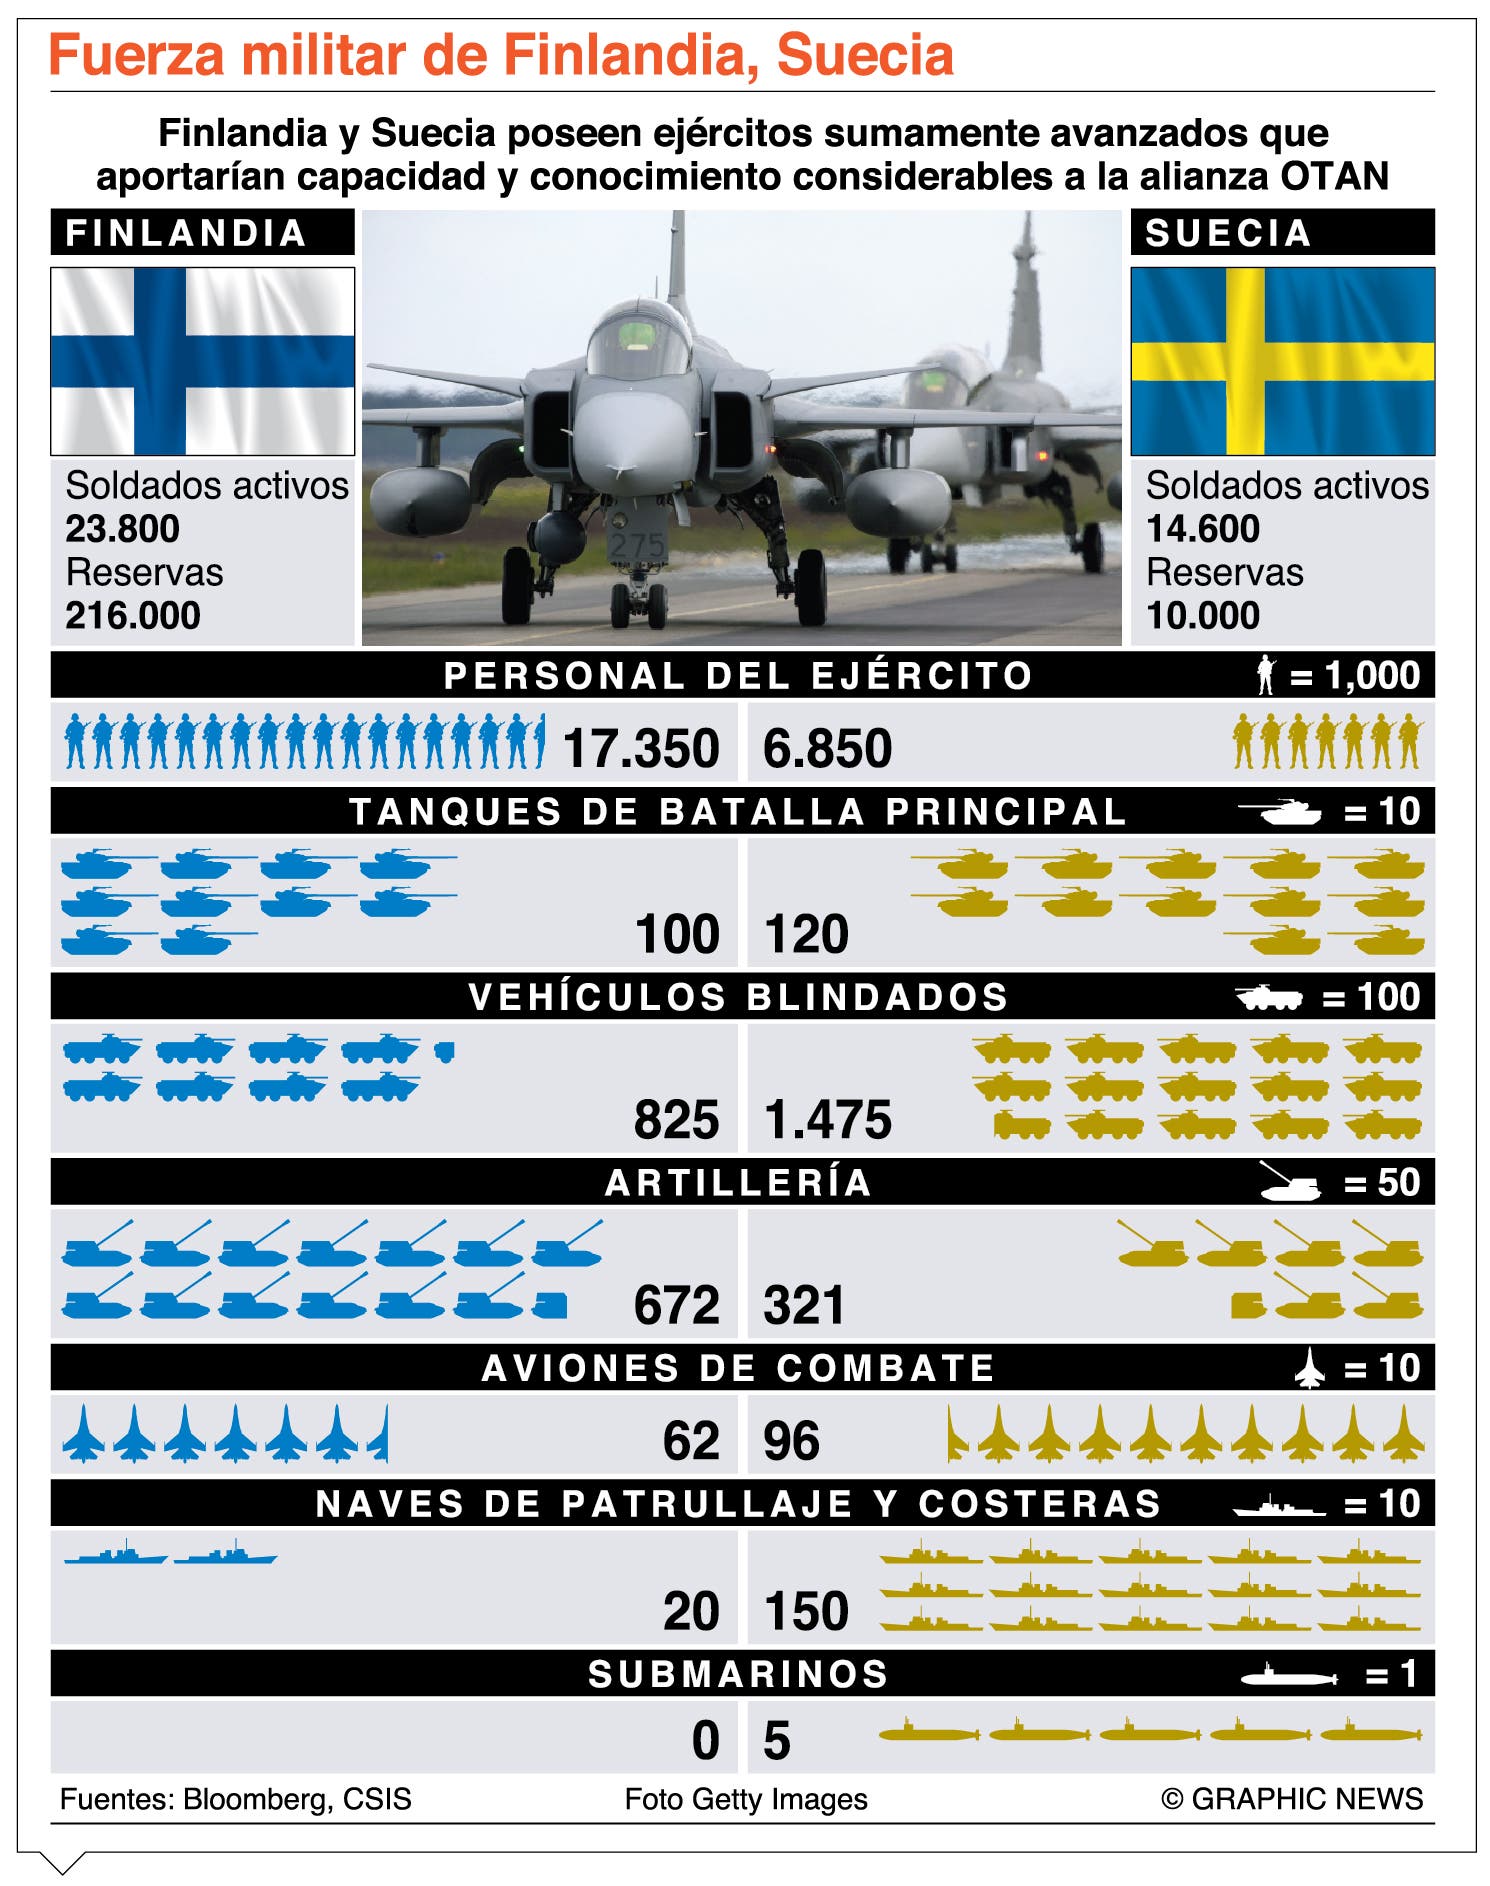 Finlandia y Suecia, ¿irán a la OTAN? Posiciones encontradas